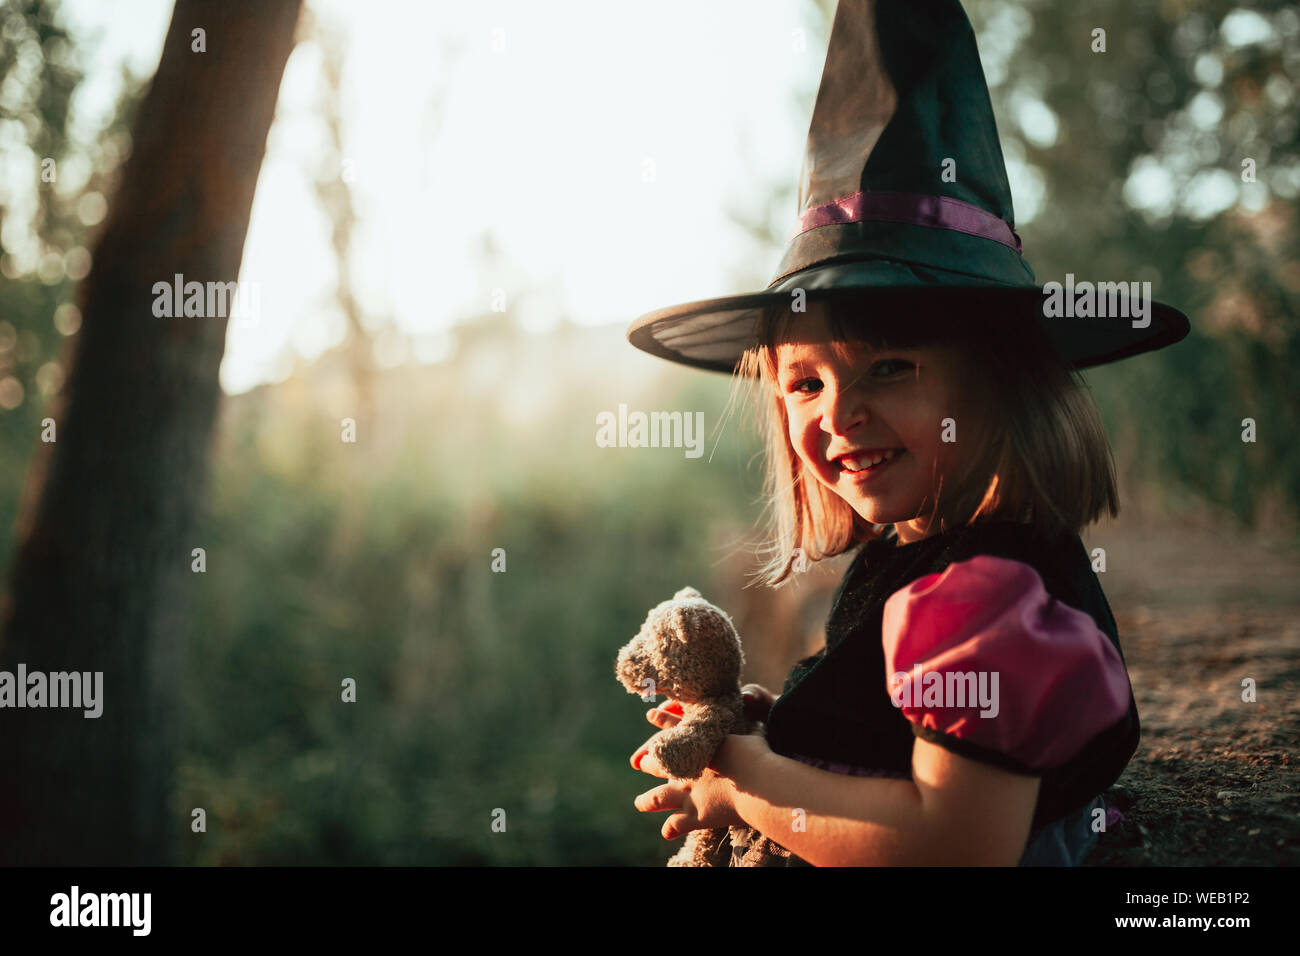 Smiling girl déguisée comme une sorcière dans les bois à l'Halloween Banque D'Images